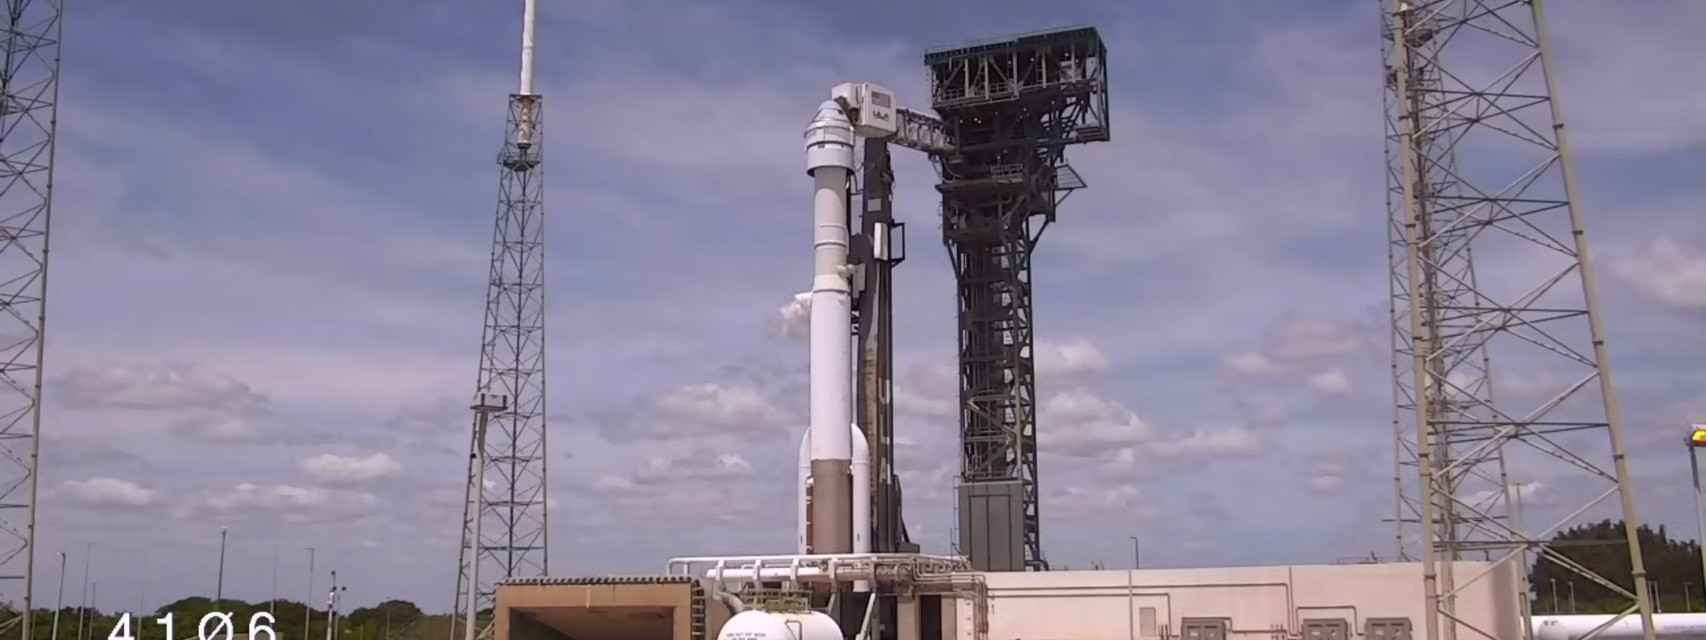 Starliner acoplada al Atlas V en la plataforma de lanzamiento.